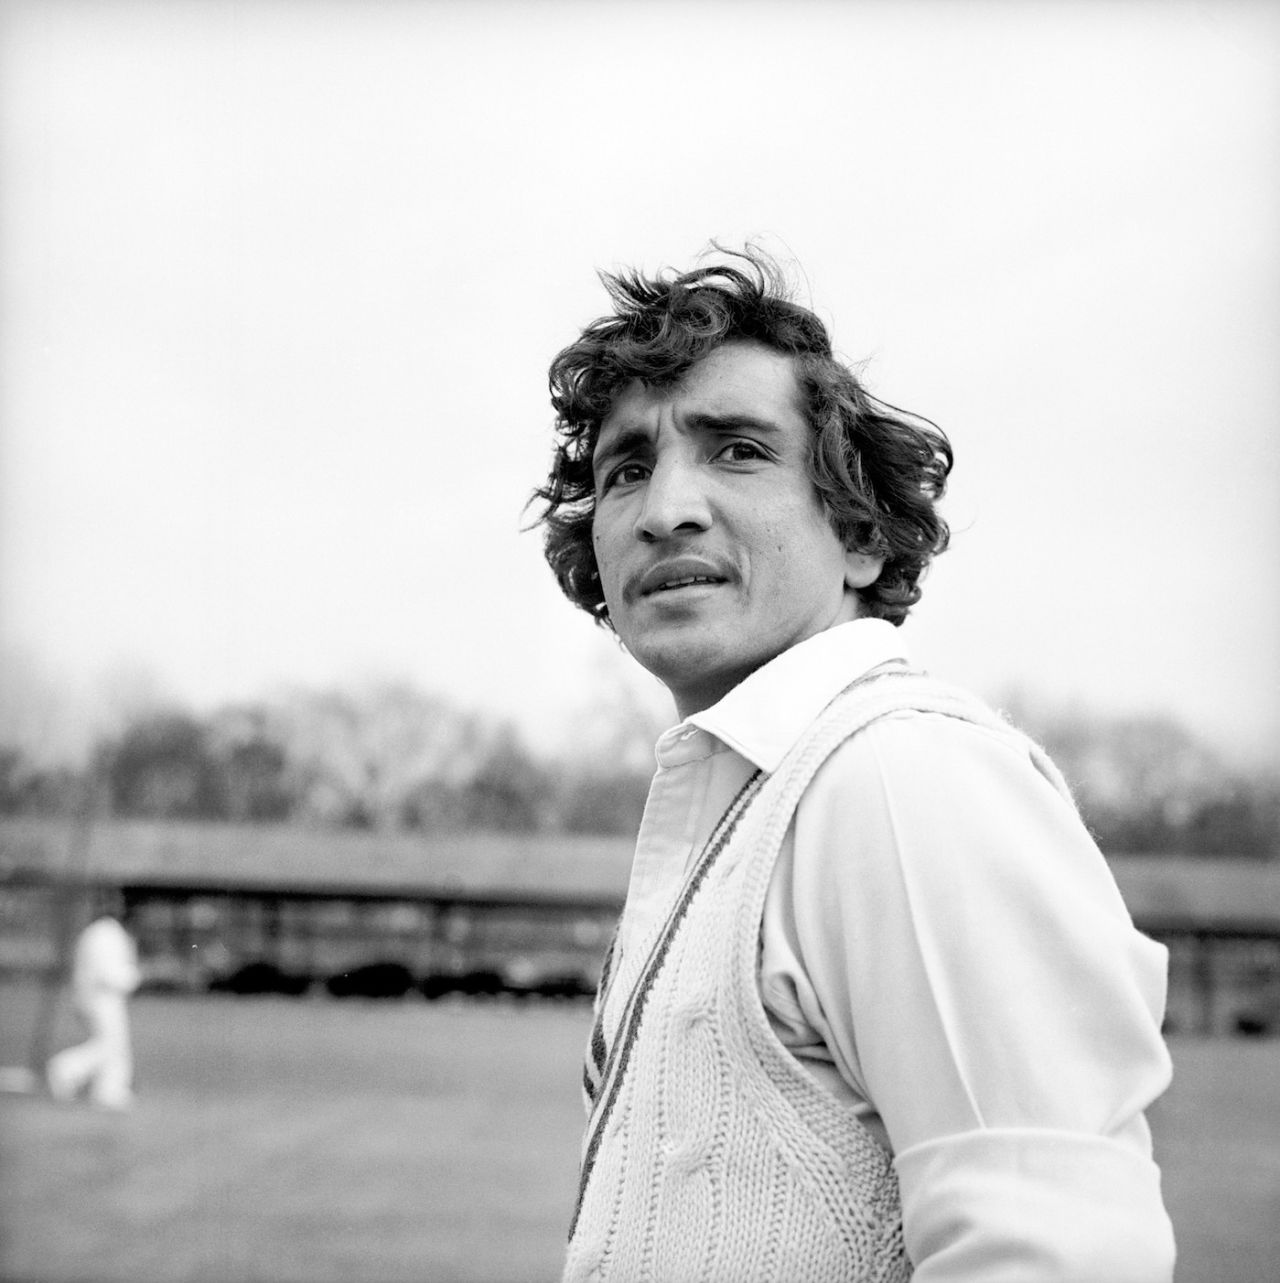 Abdul Qadir on Pakistan's tour of England, April 17, 1978